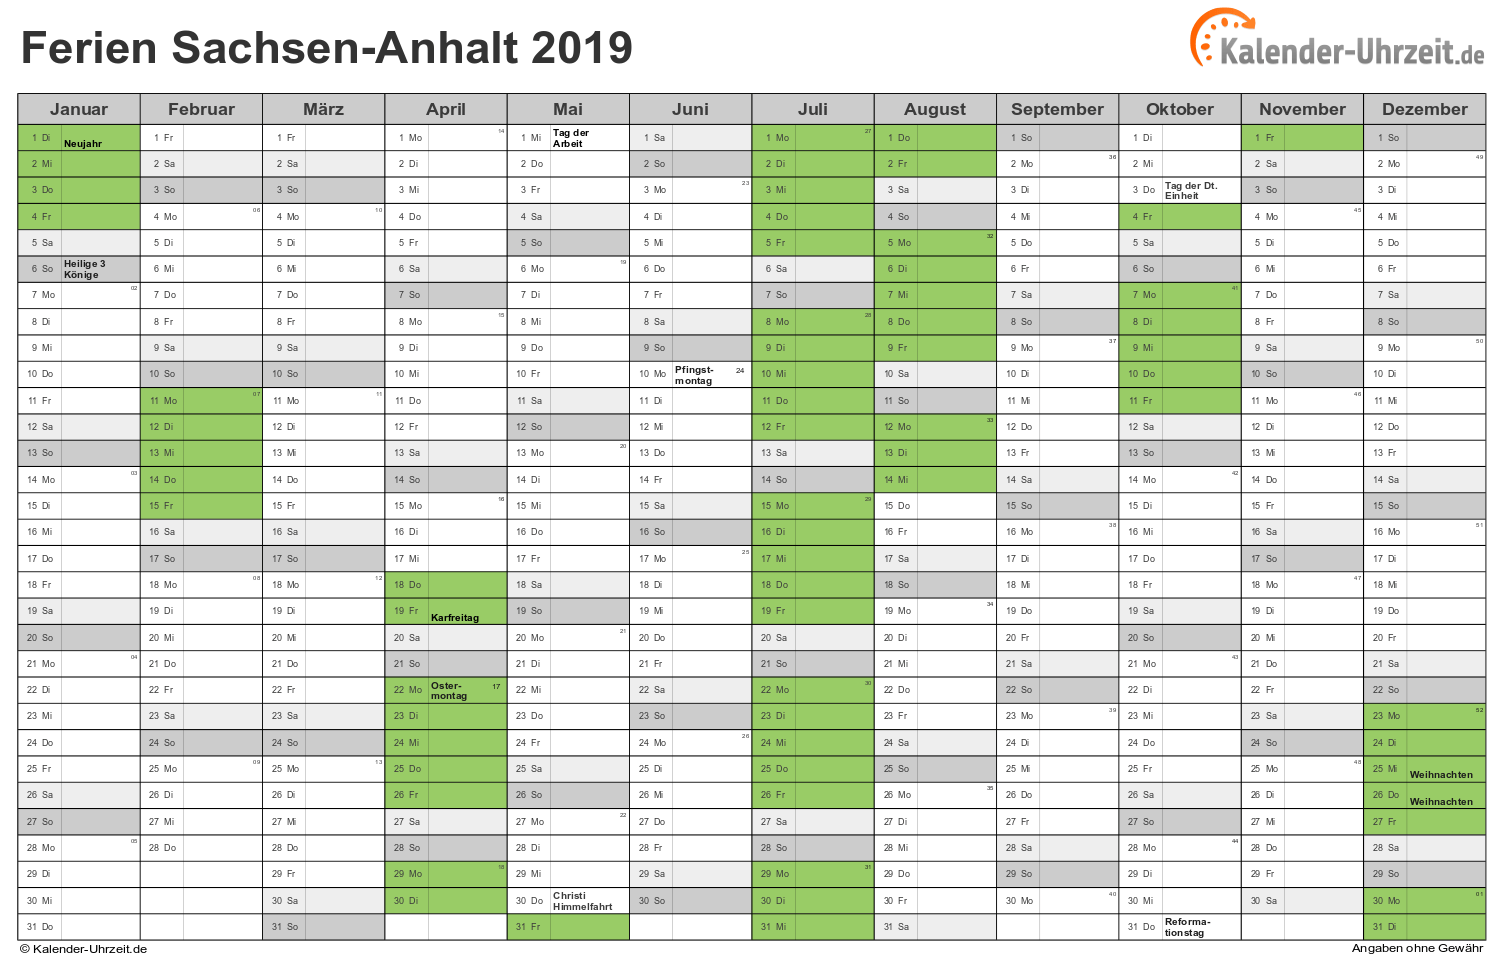 Ferien Sachsen-Anhalt 2019 - Ferienkalender zum Ausdrucken